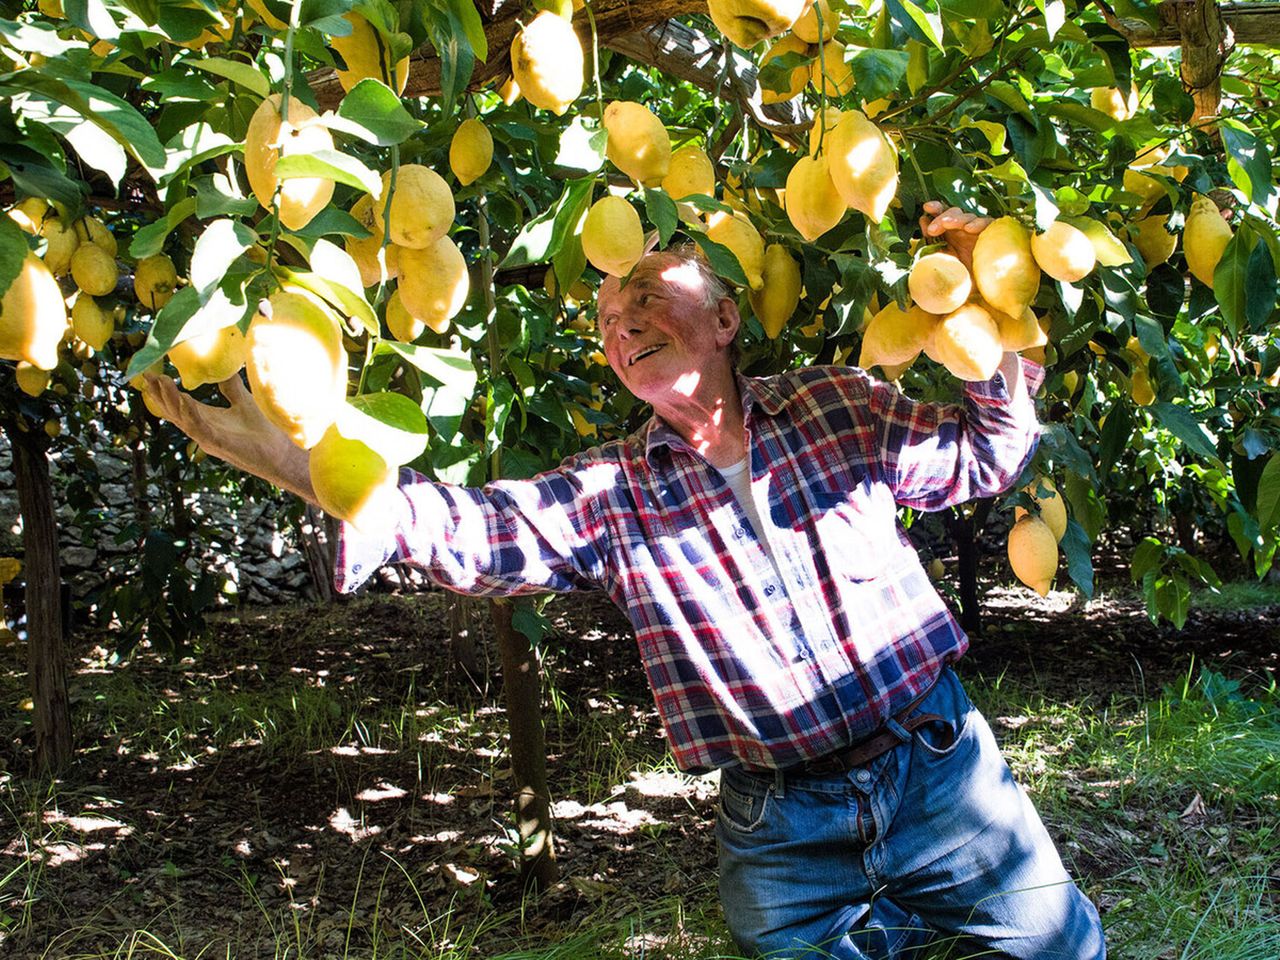 Амальфи, лимонные плантации+дегустация лимончелло | Цена 250€, отзывы, описание экскурсии